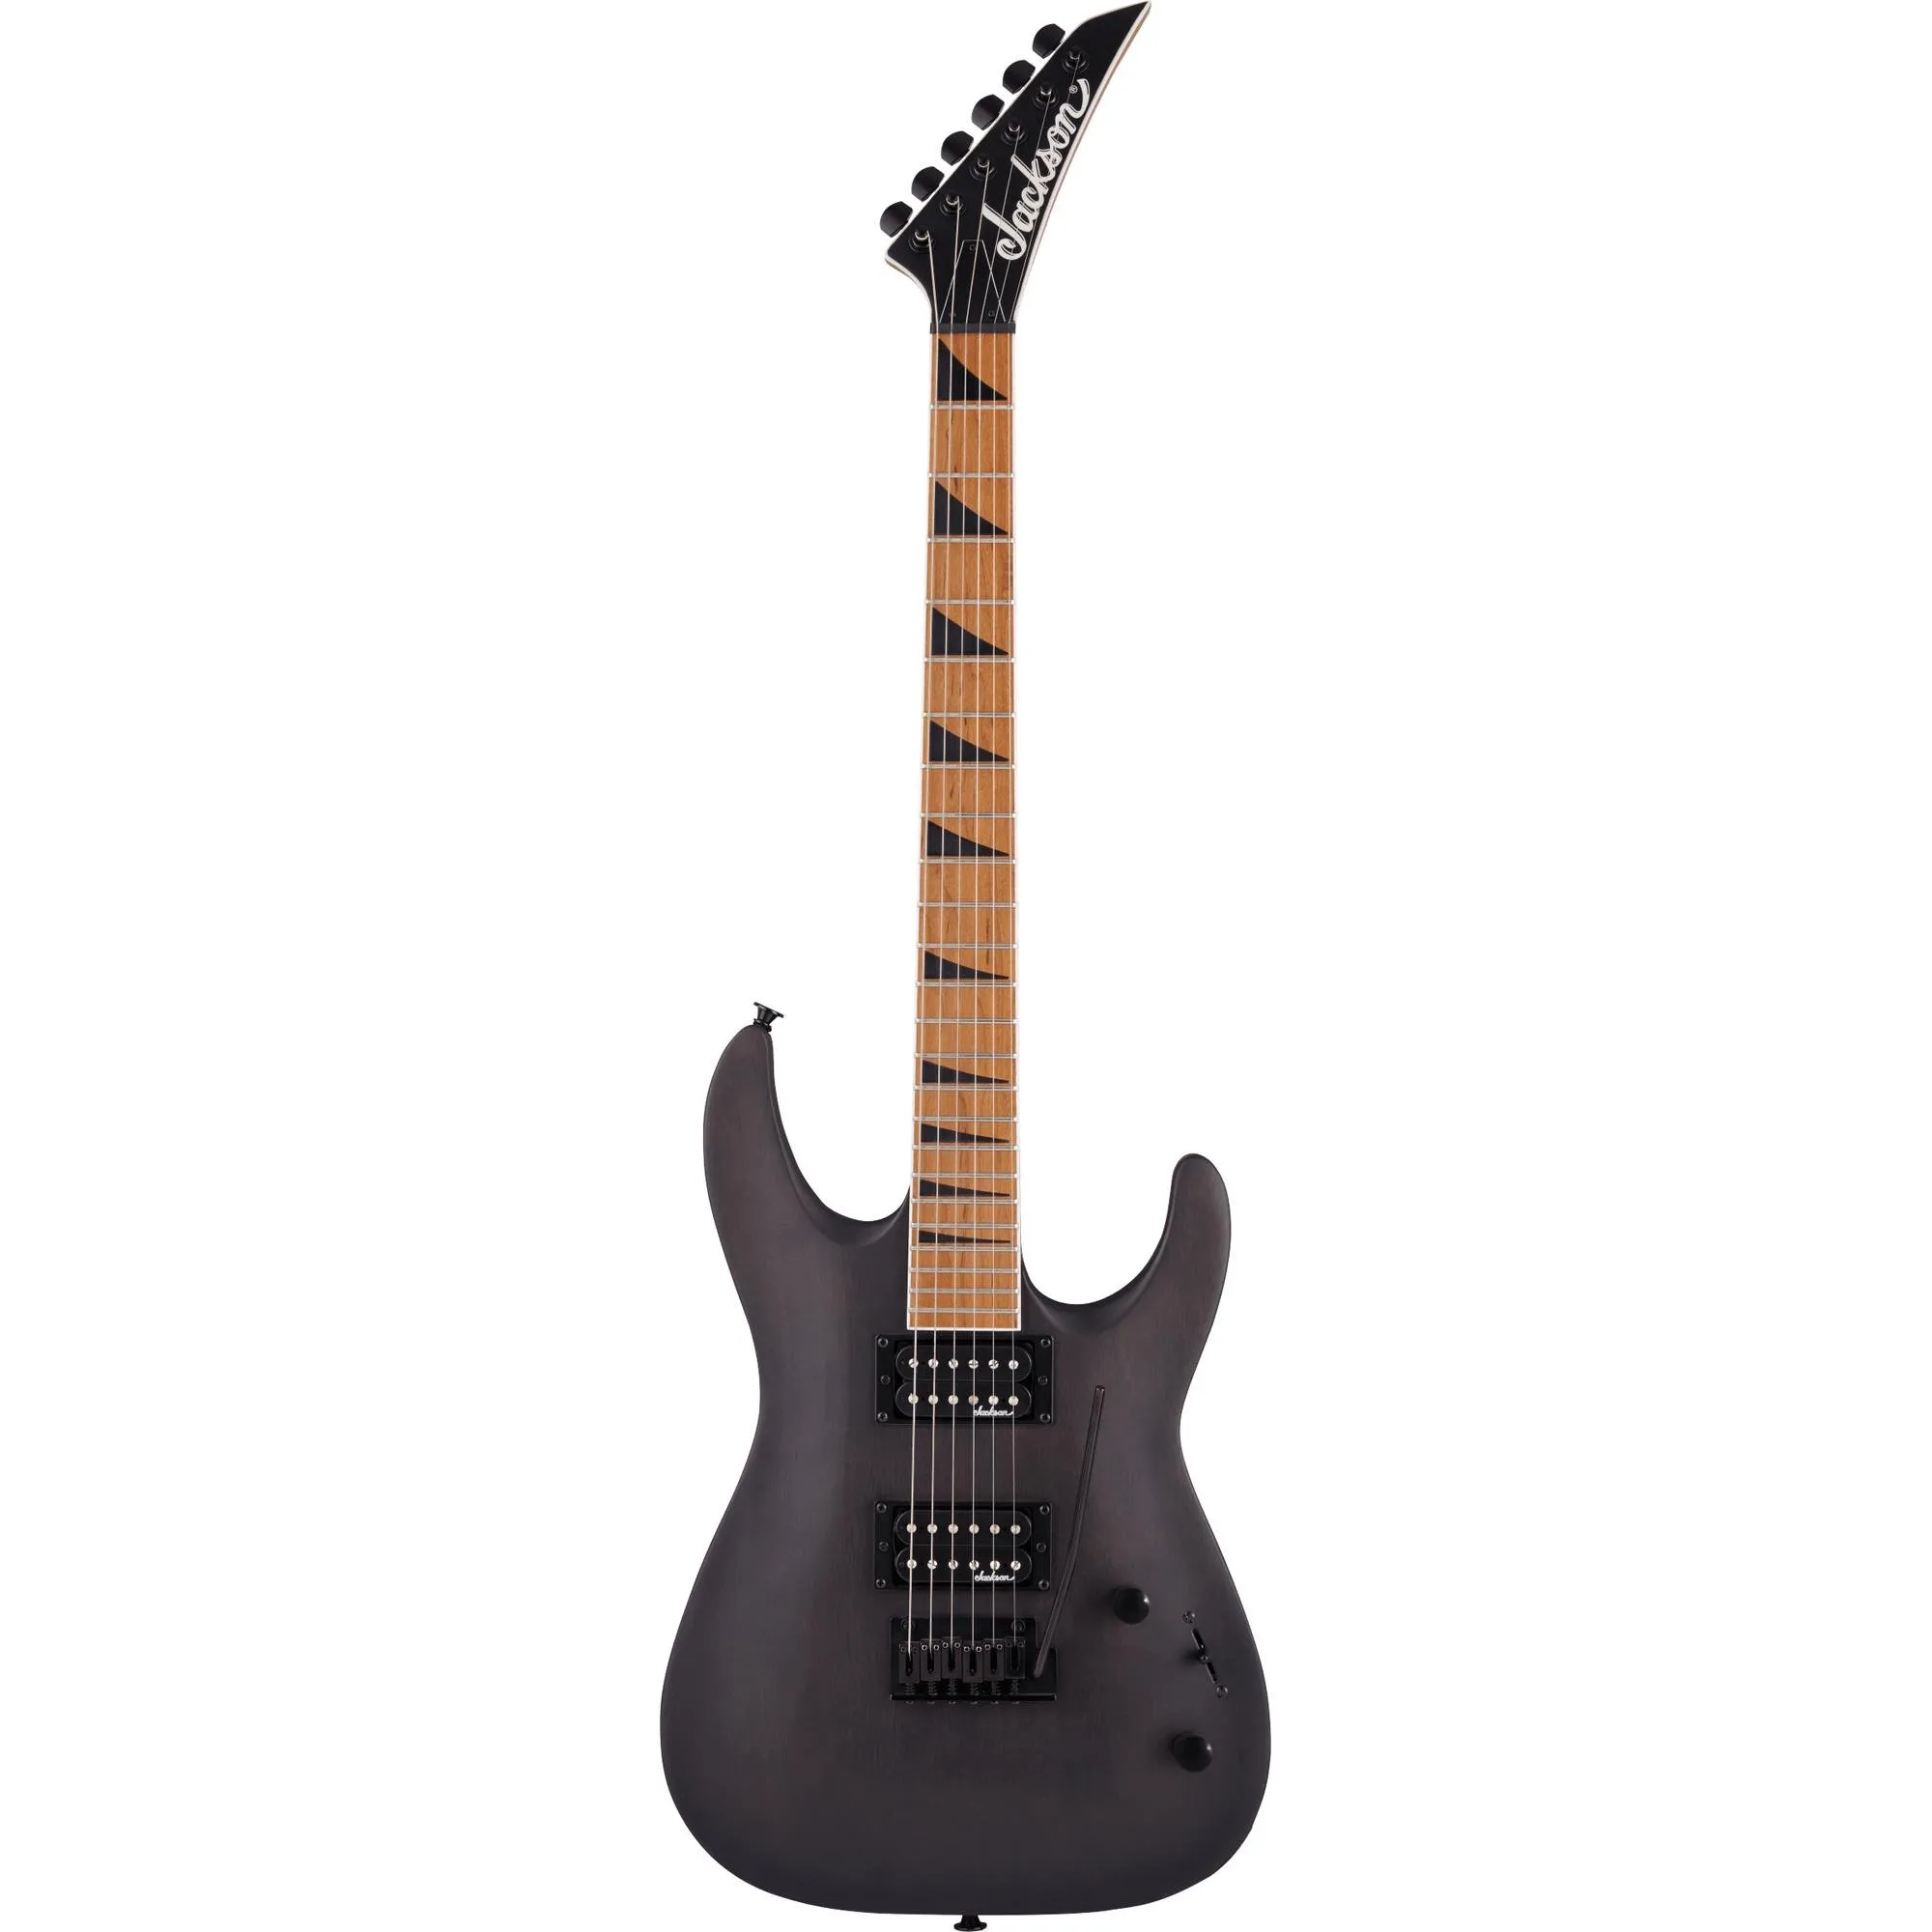 Guitarra Jackson Dinky Arch Top JS24 DKAM Black Stain por 2.695,99 à vista no boleto/pix ou parcele em até 12x sem juros. Compre na loja Mundomax!